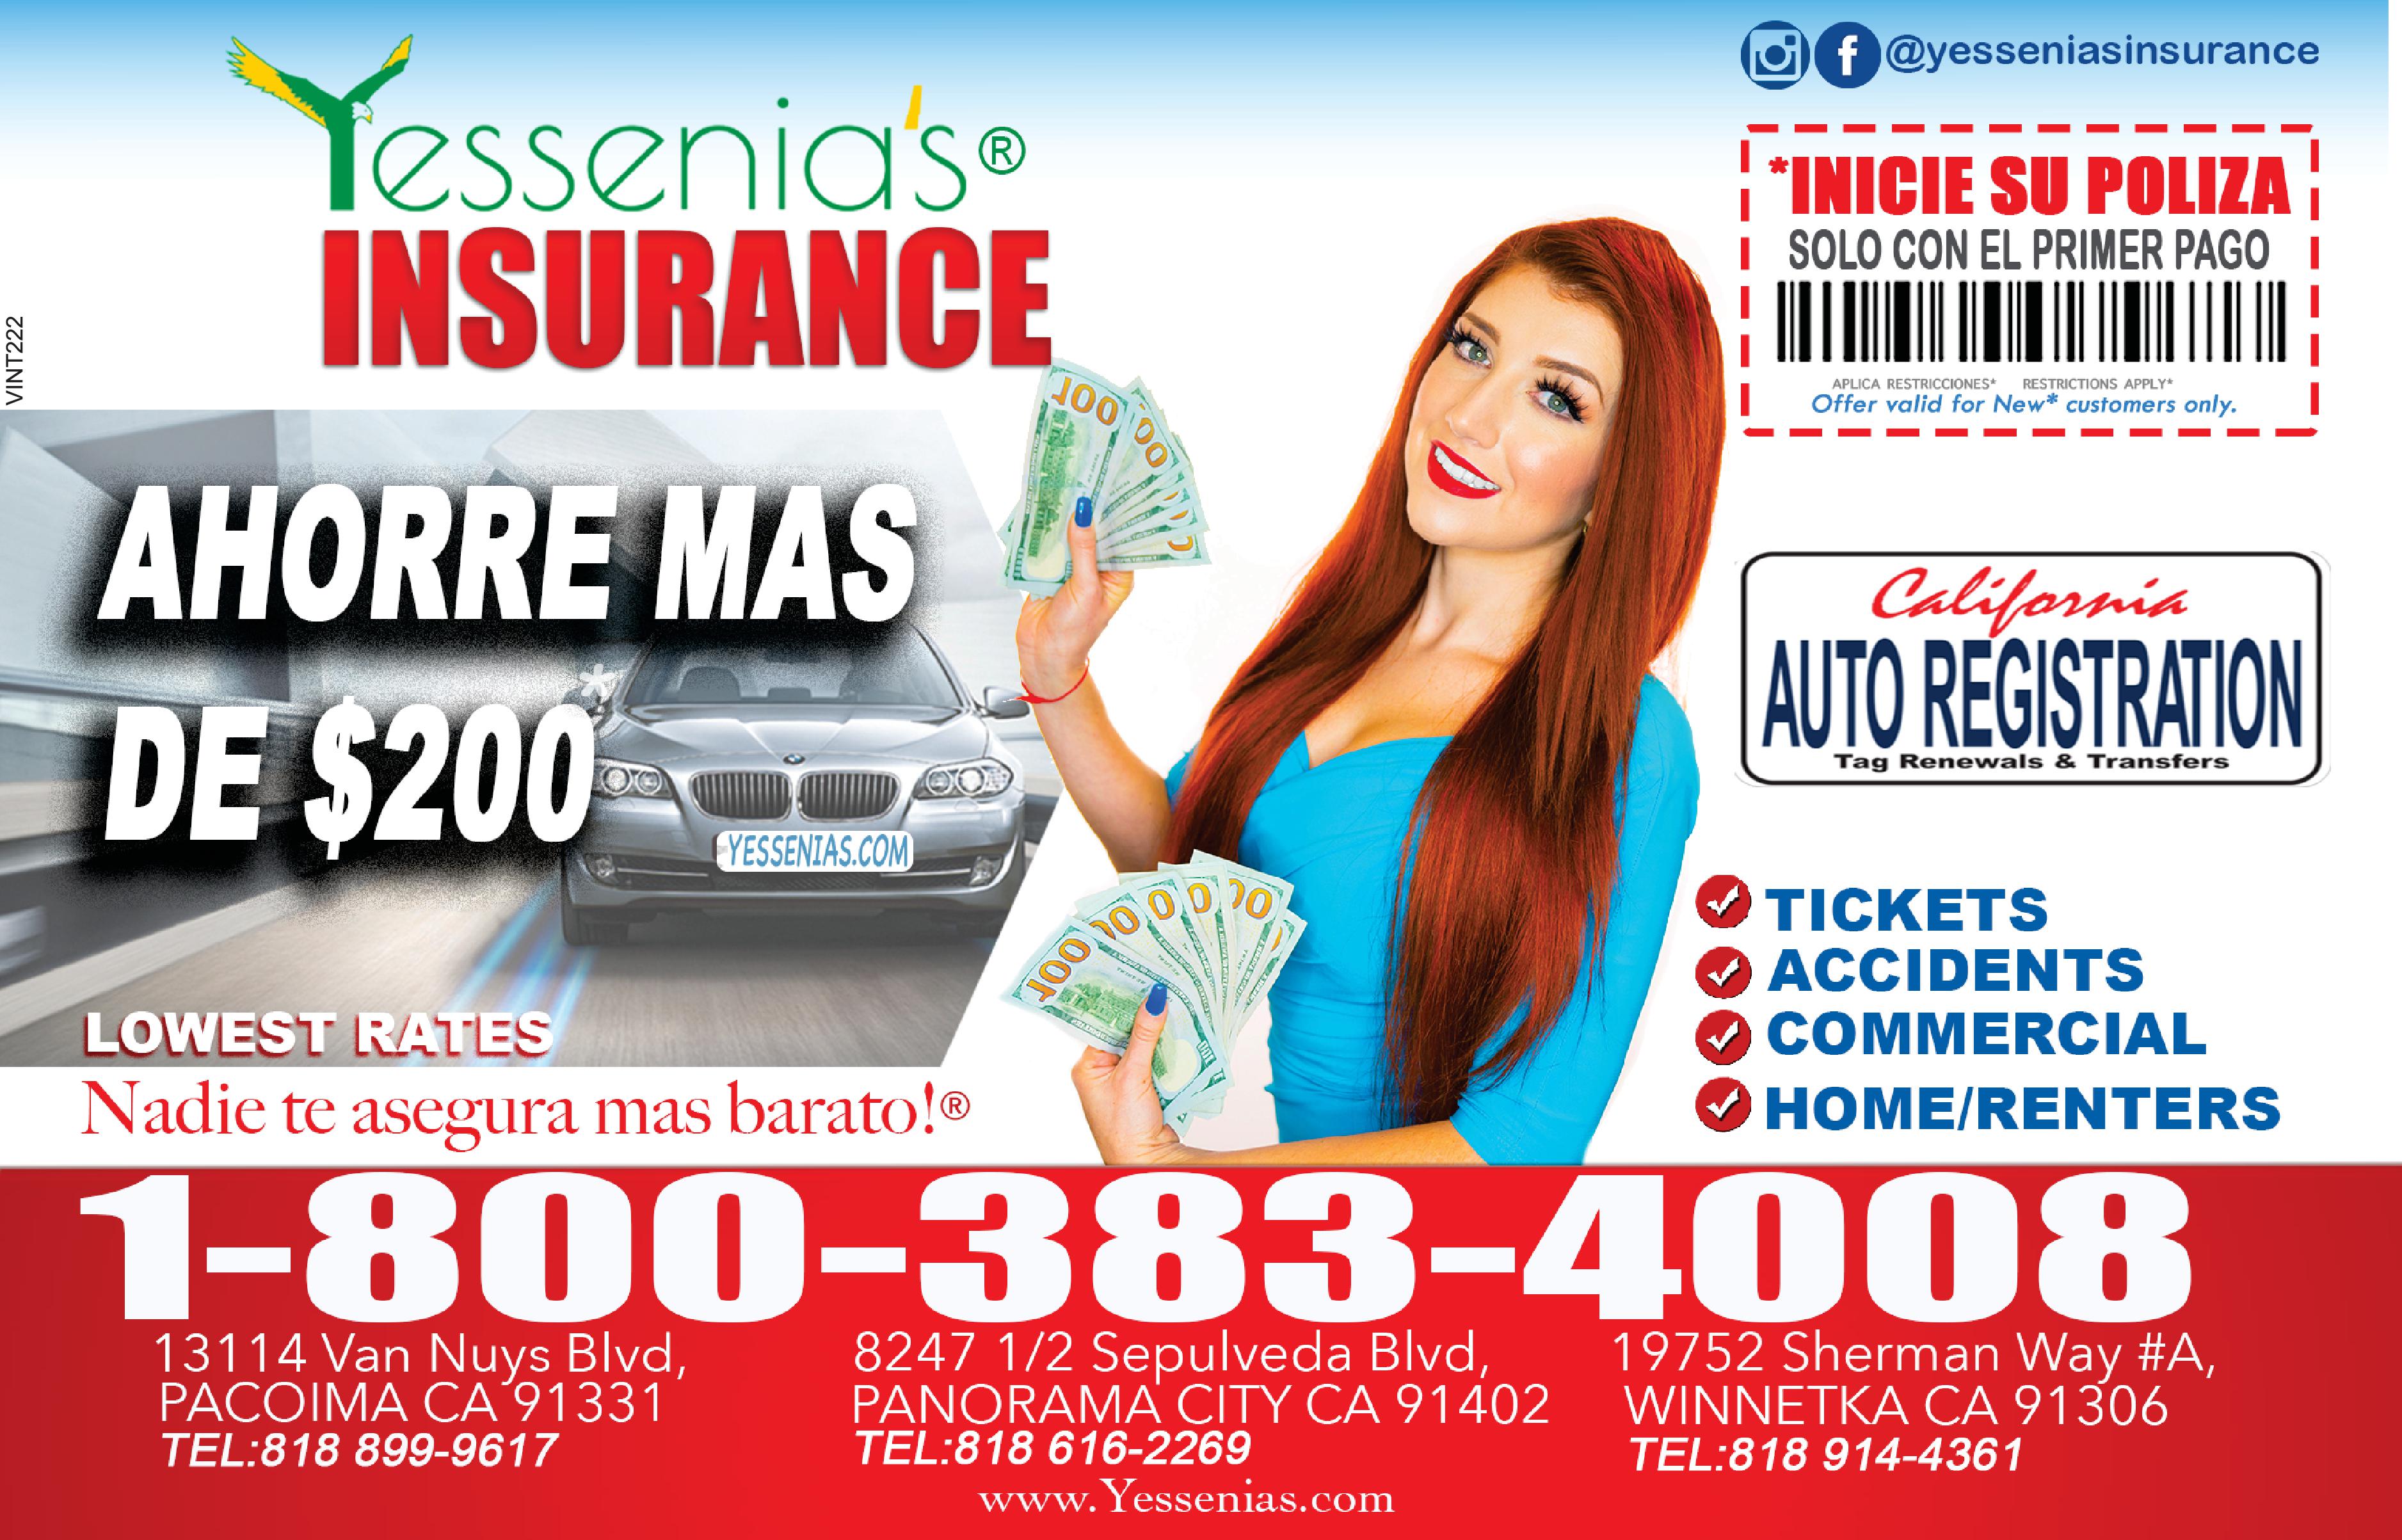 Yessenia's Insurance